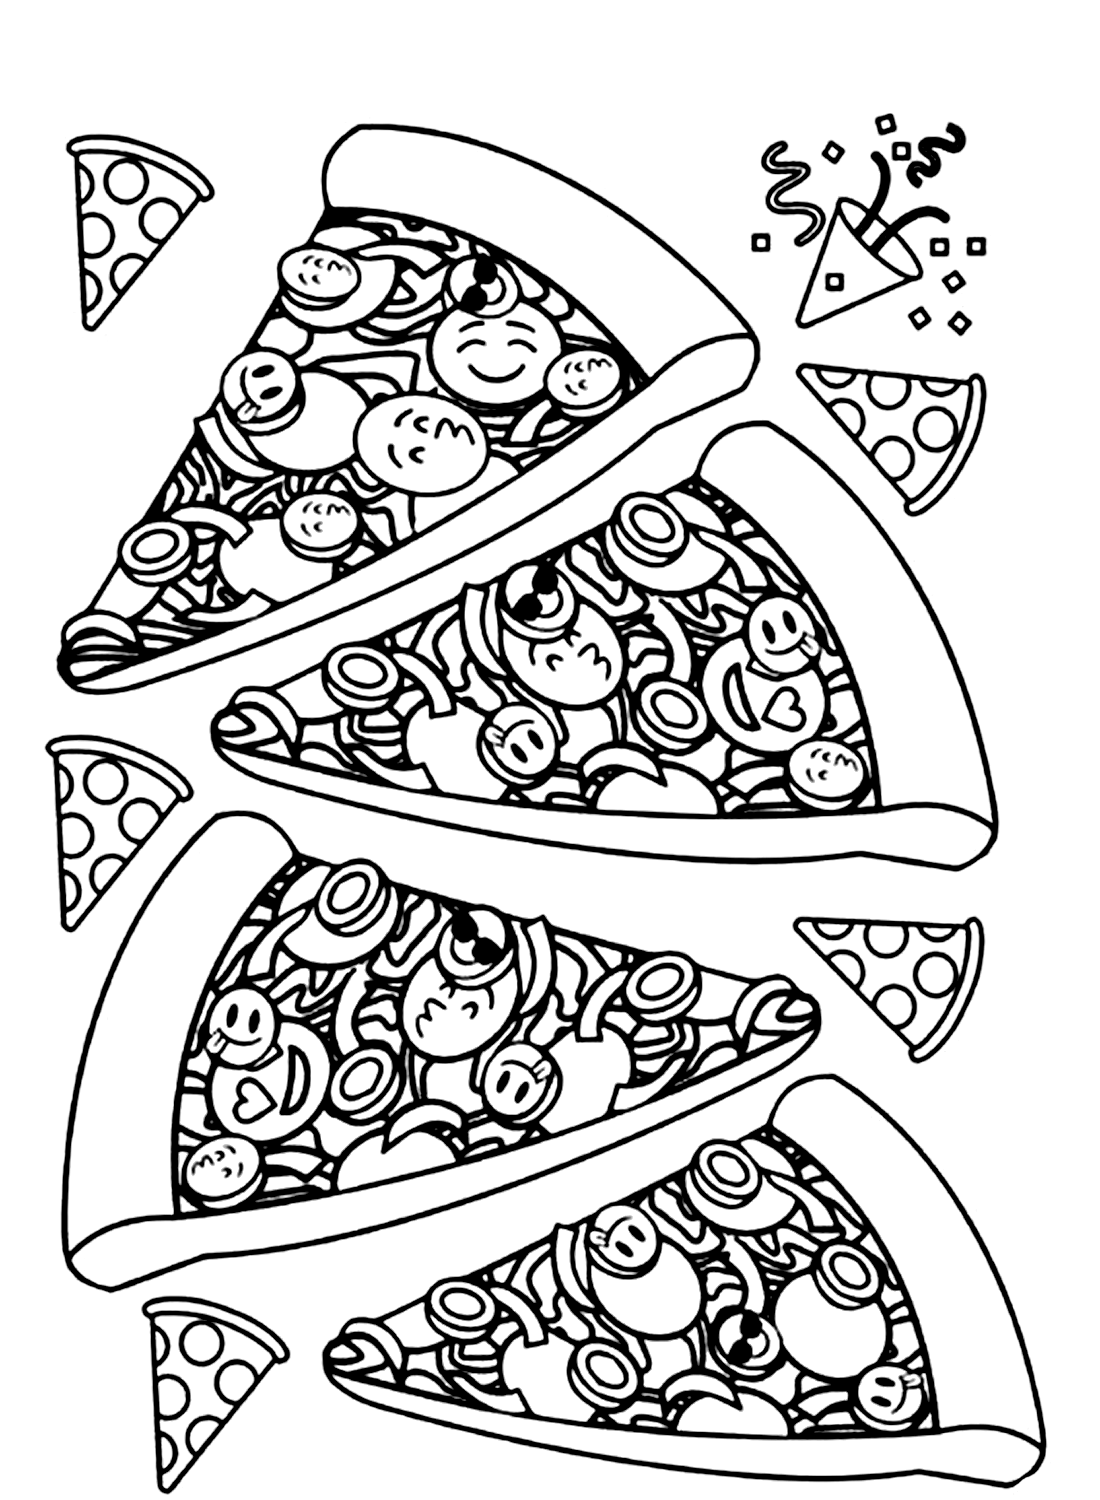 Delizioso foglio di pizza